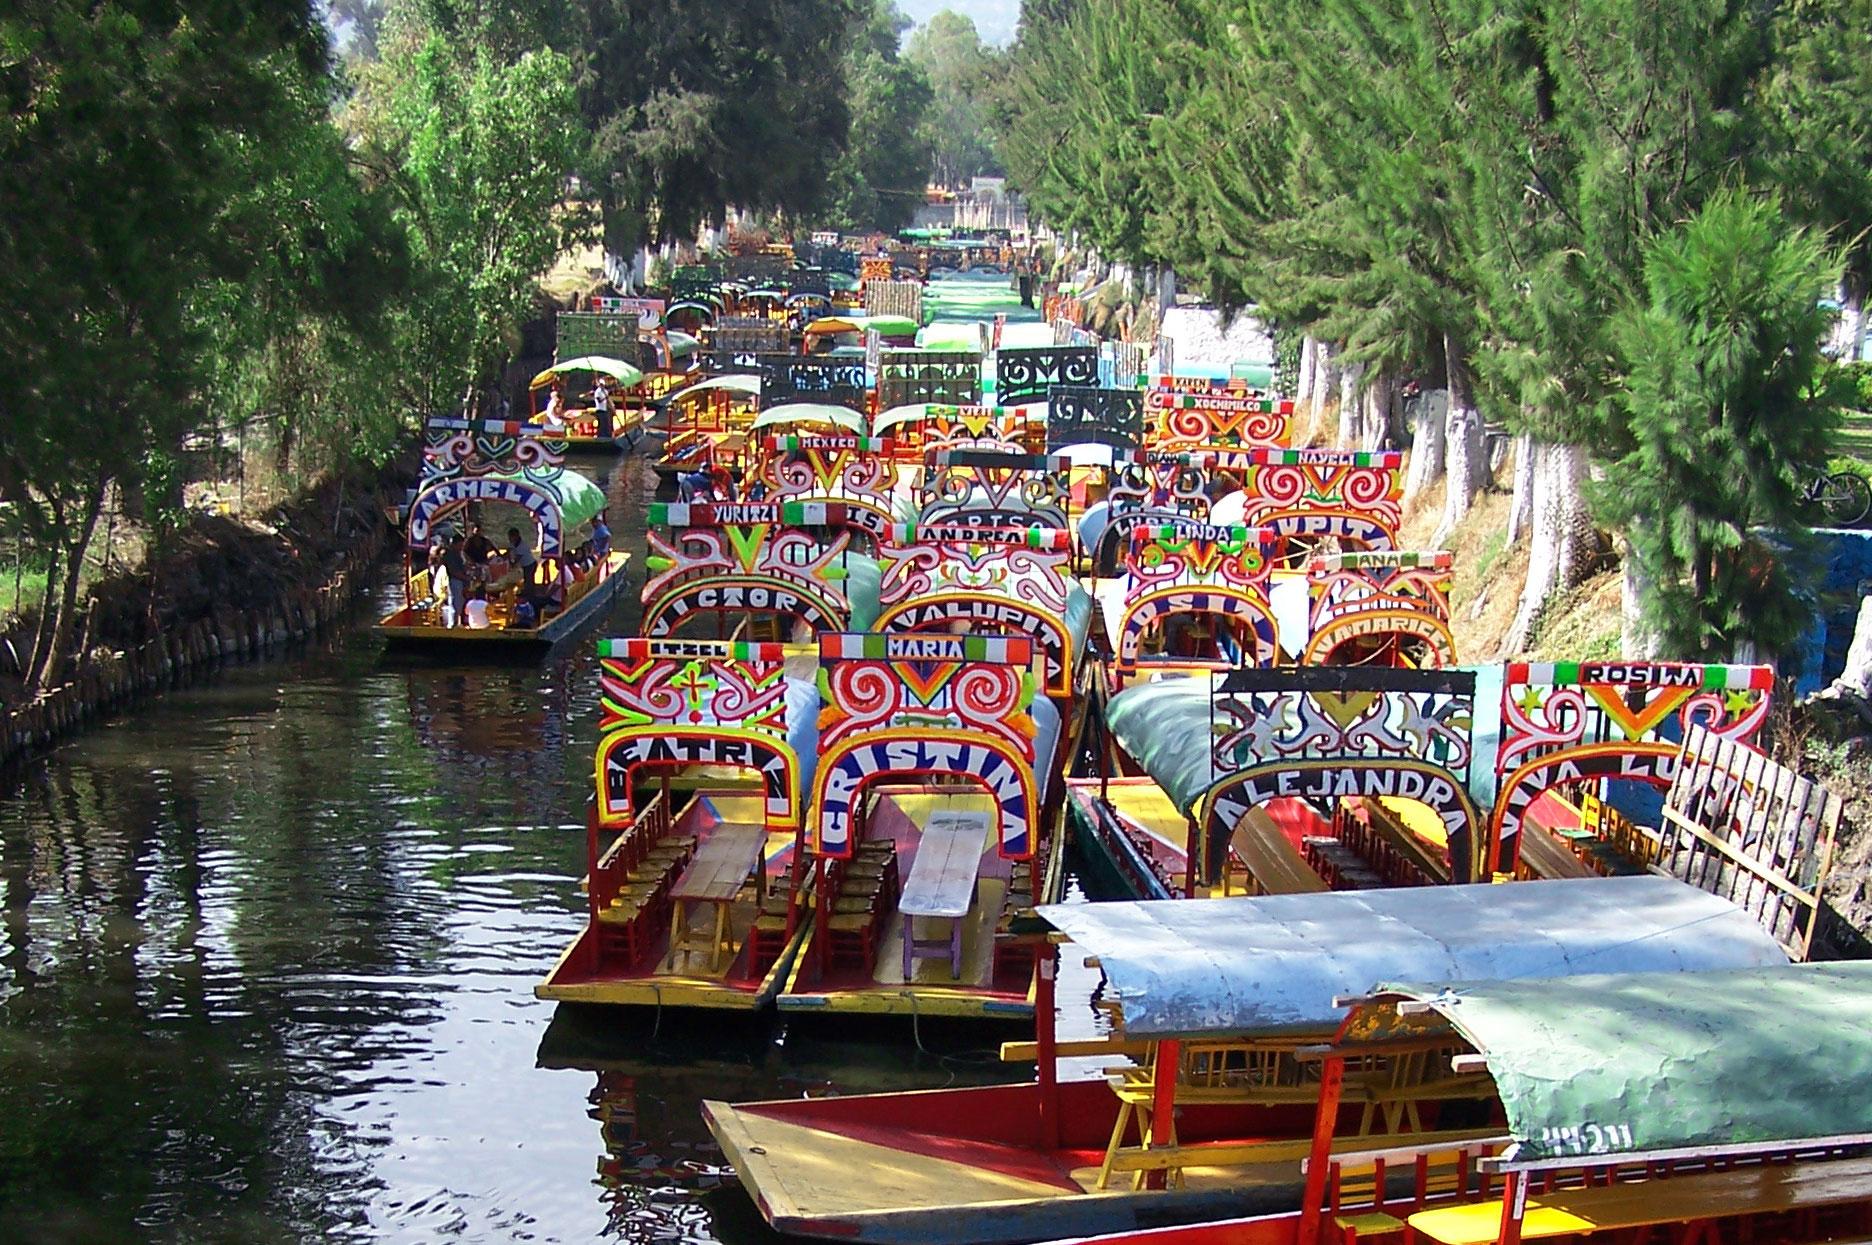 Xochimilco boats, Mexico City